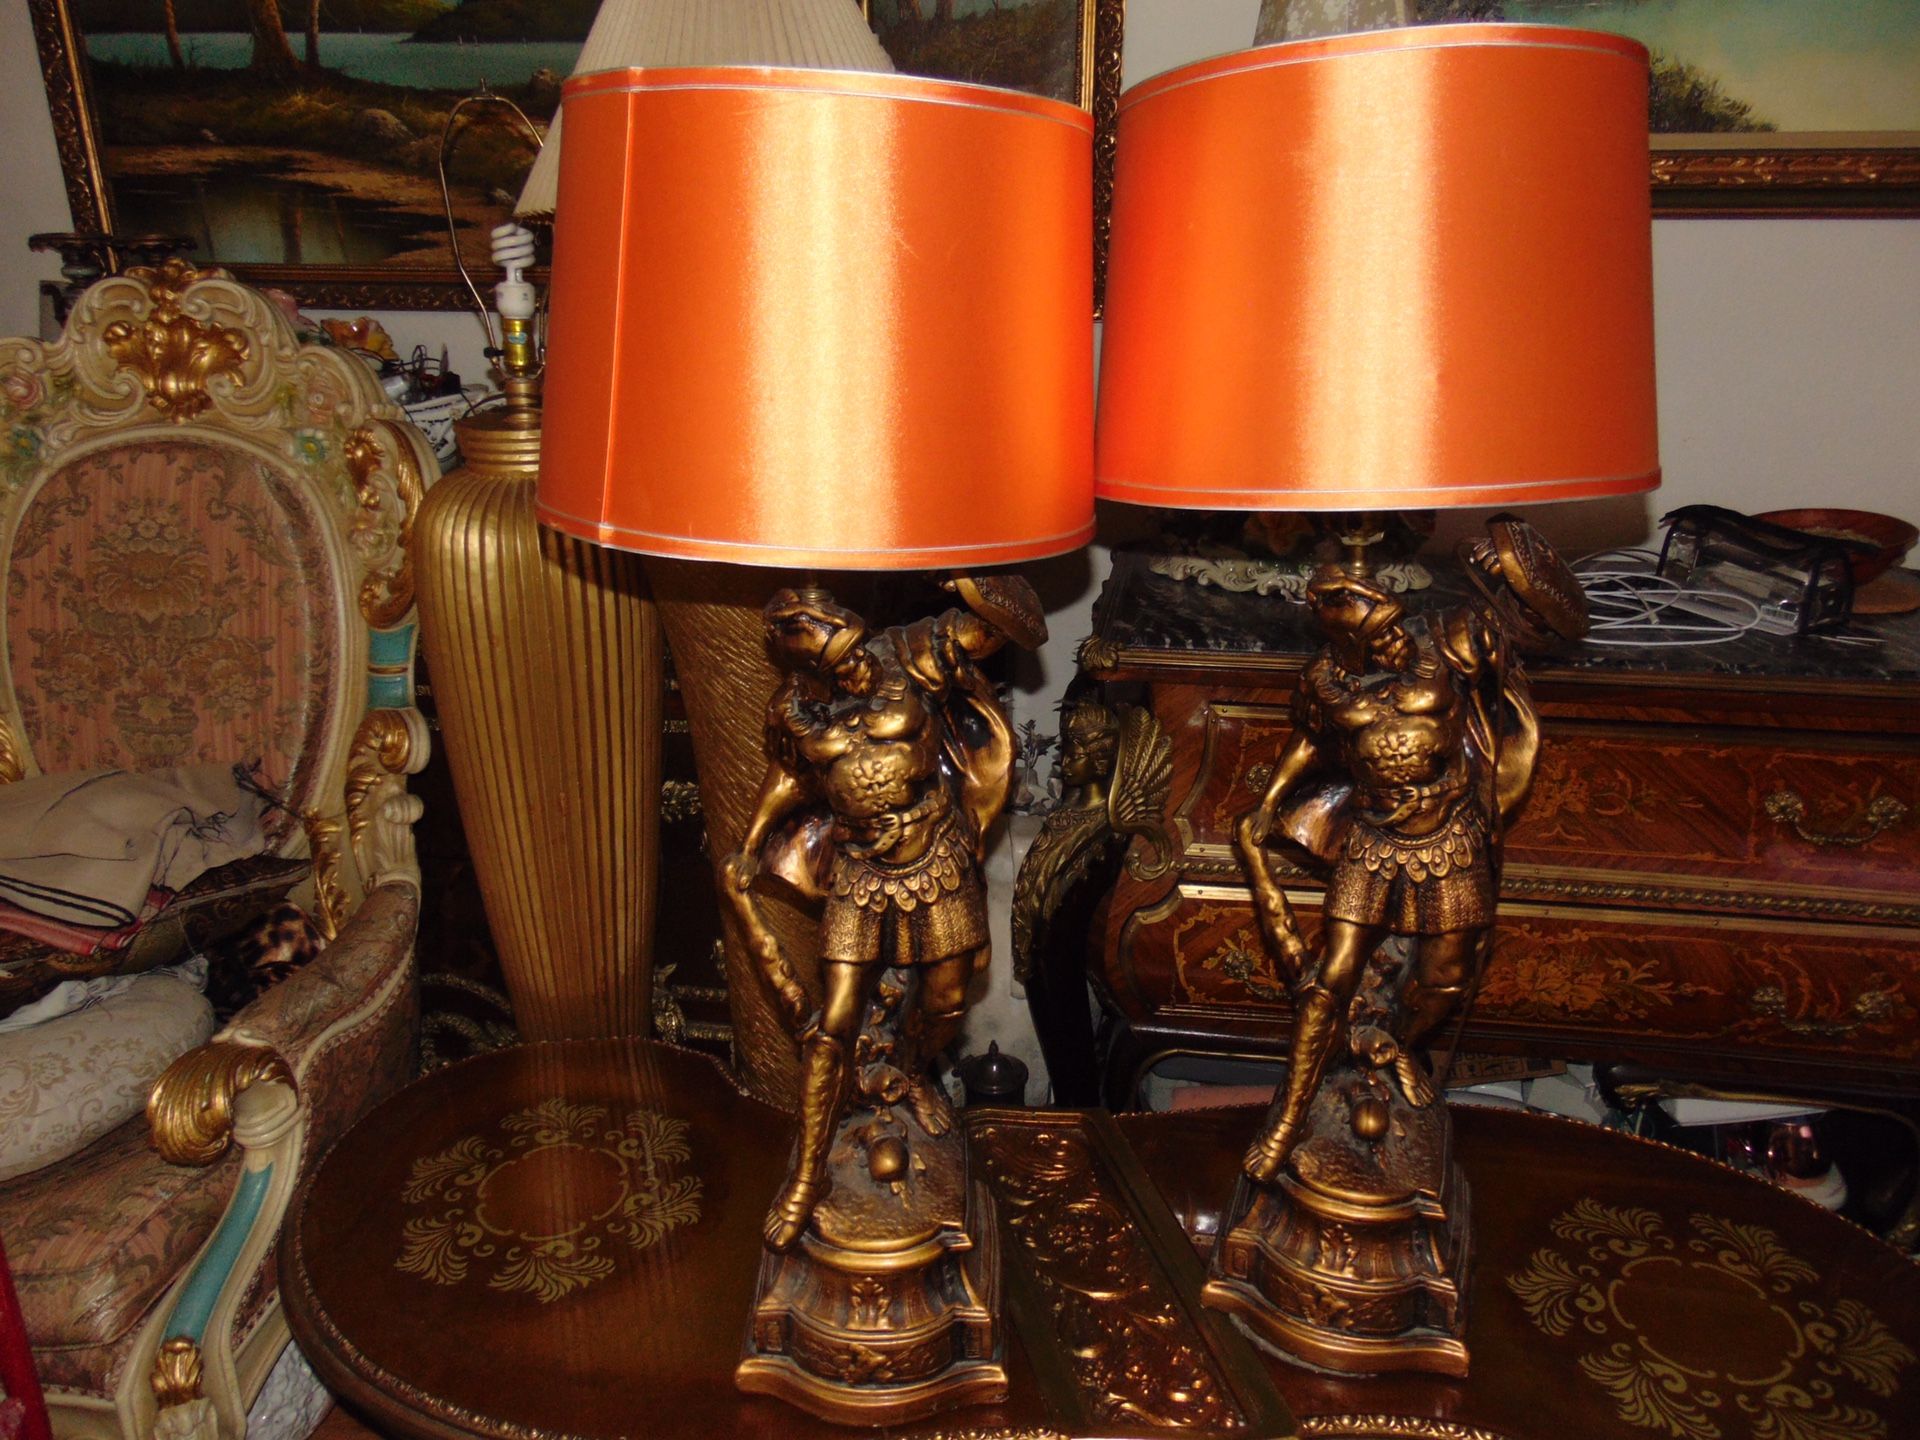 2 huge Roman warriors lamps